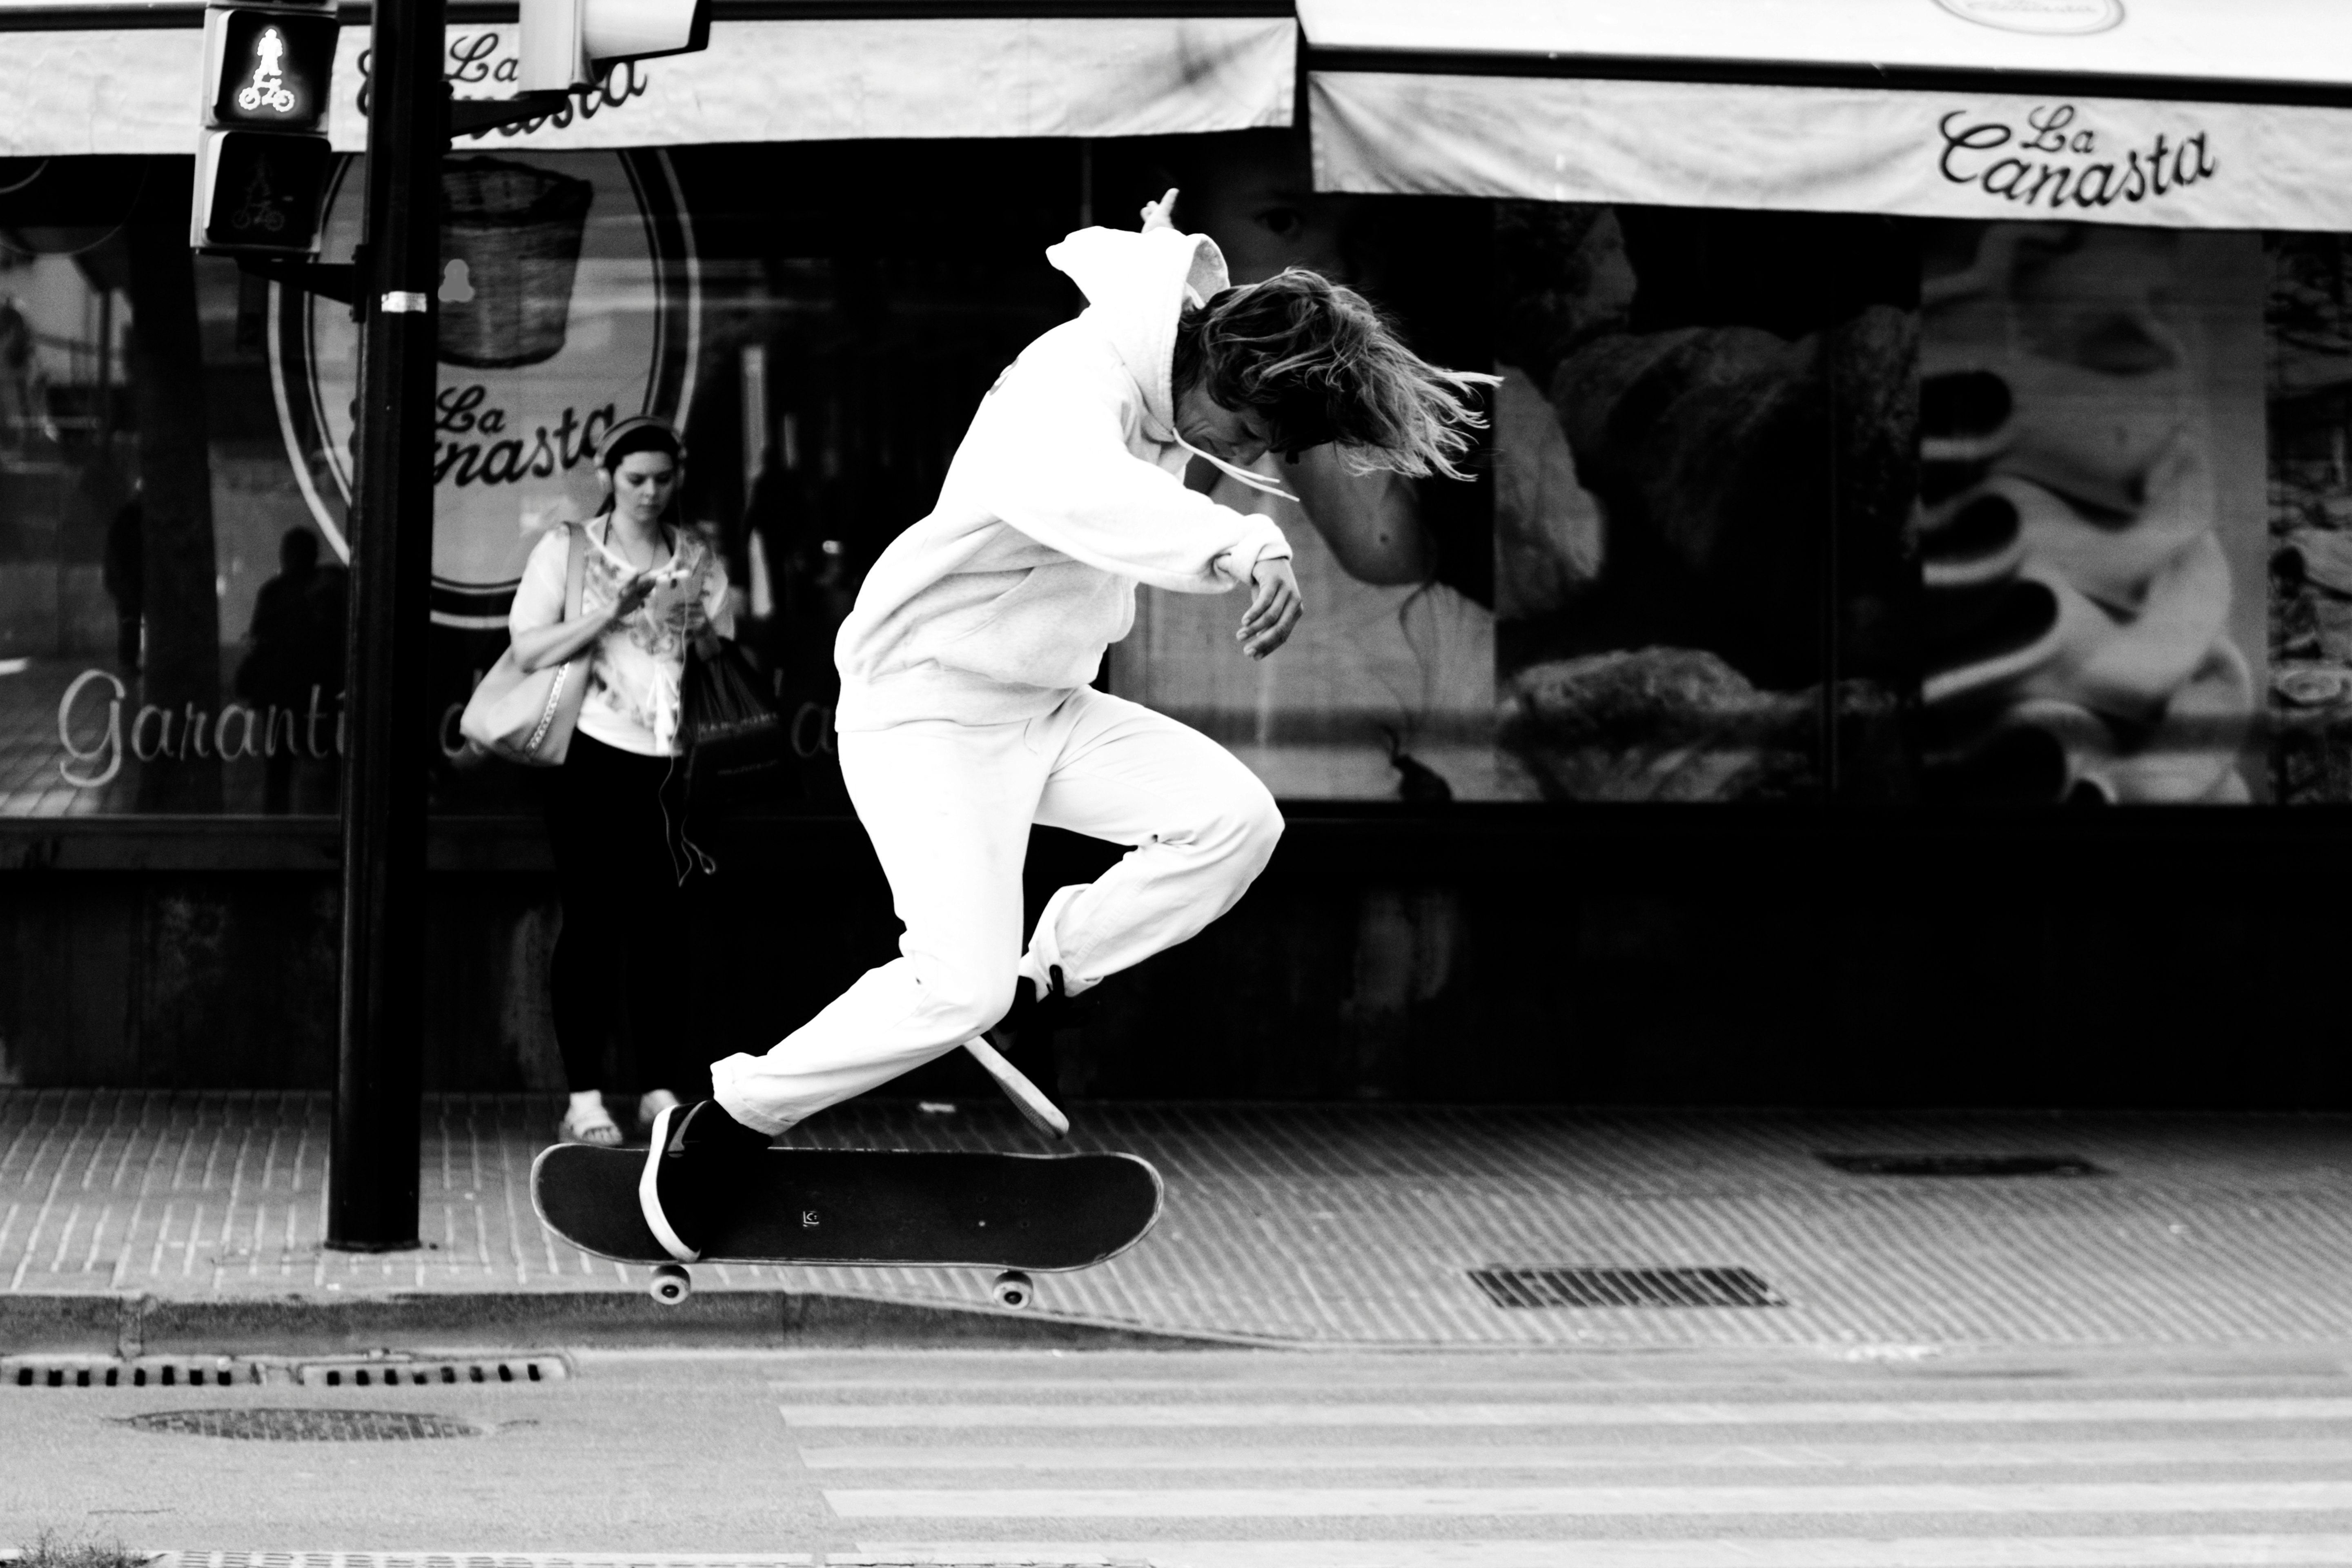 man playing skateboard